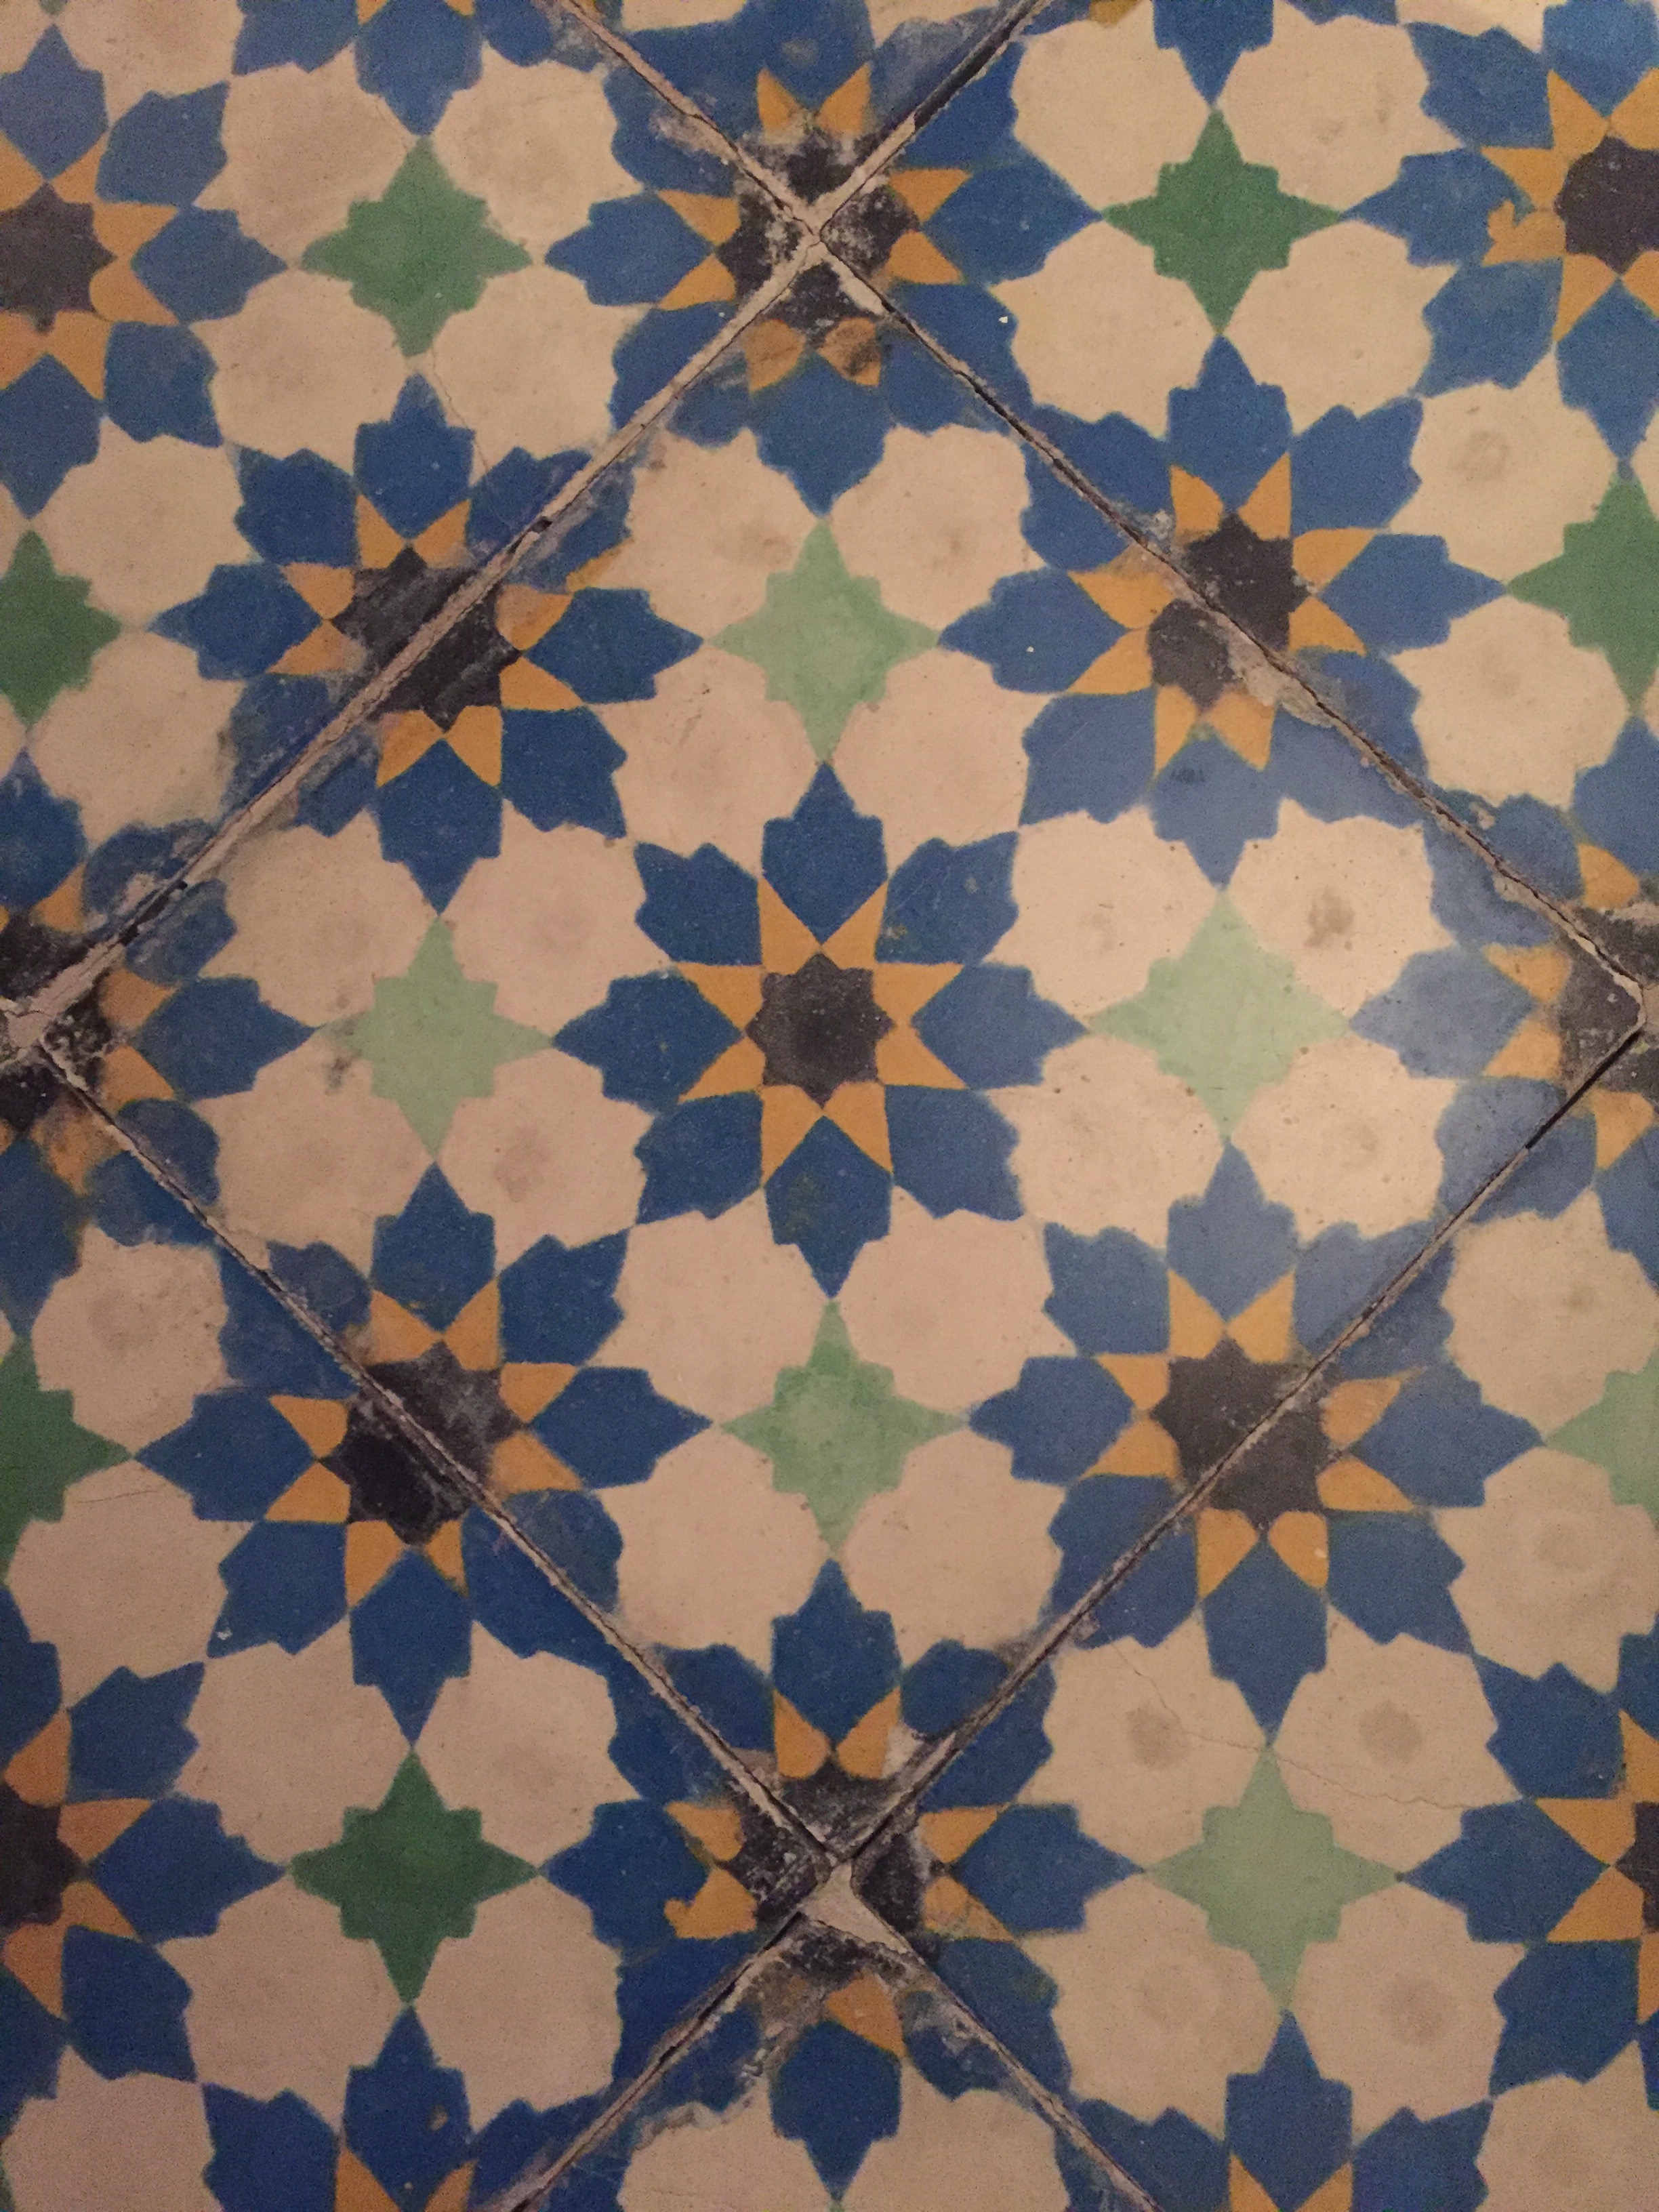 Maroc Tiles.jpg